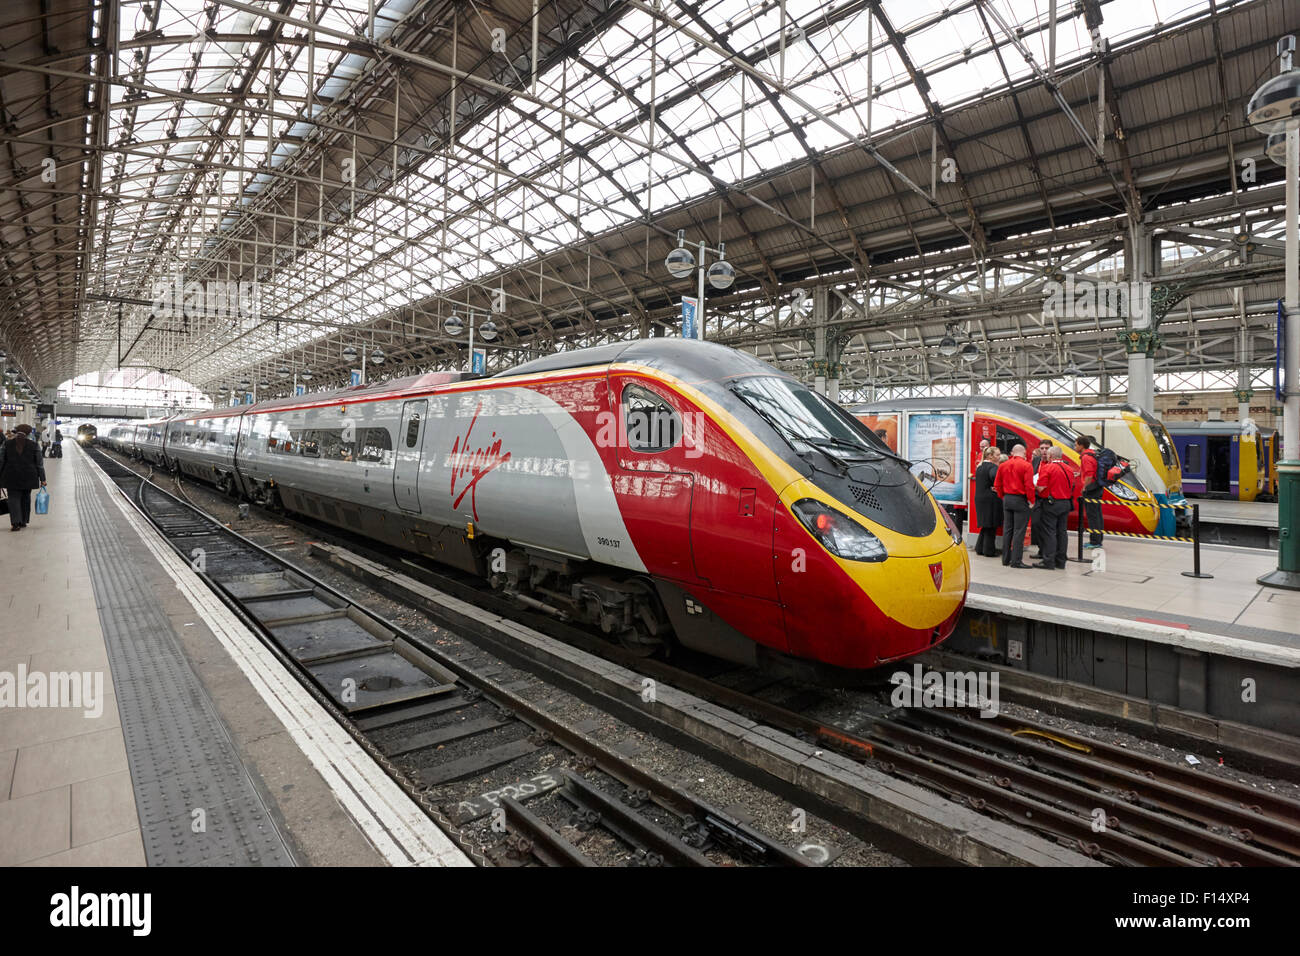 Virgin Trains treno pendolino a piattaforma per la stazione ferroviaria di Piccadilly a Manchester REGNO UNITO Foto Stock